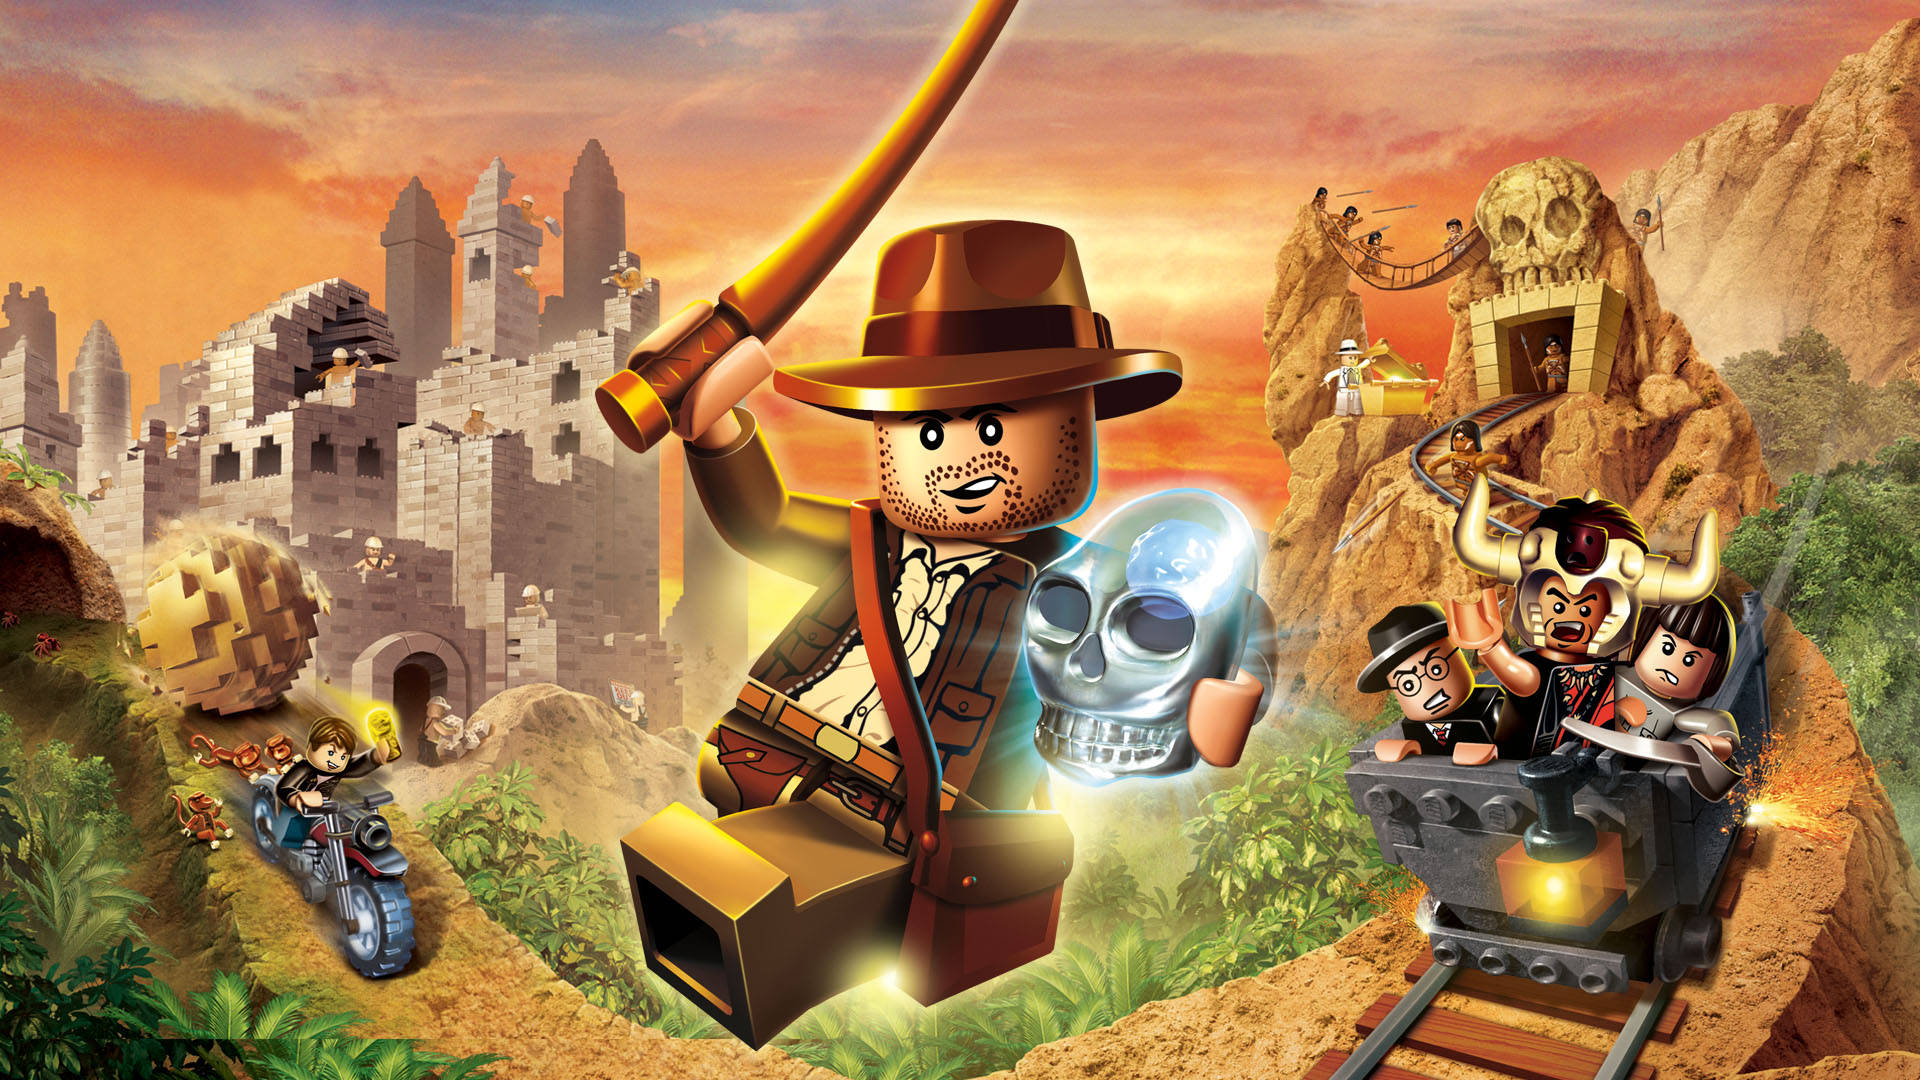 Lego Inspireret Indiana Jones Adventure tapet, der vil sætte stemningen for et eventyr. Wallpaper